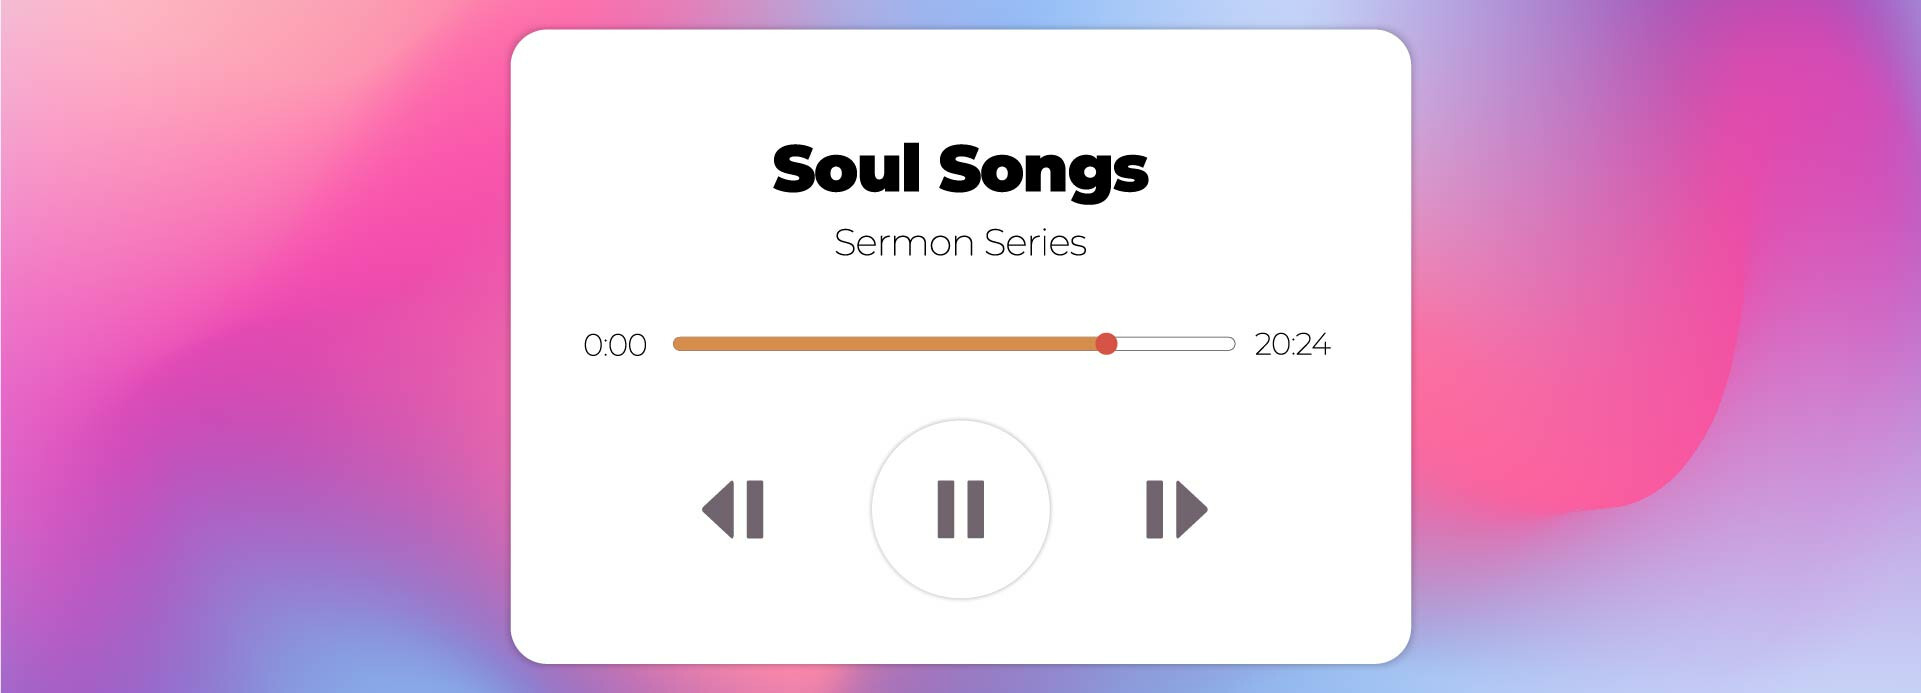 Soul Songs February 11 Devotional